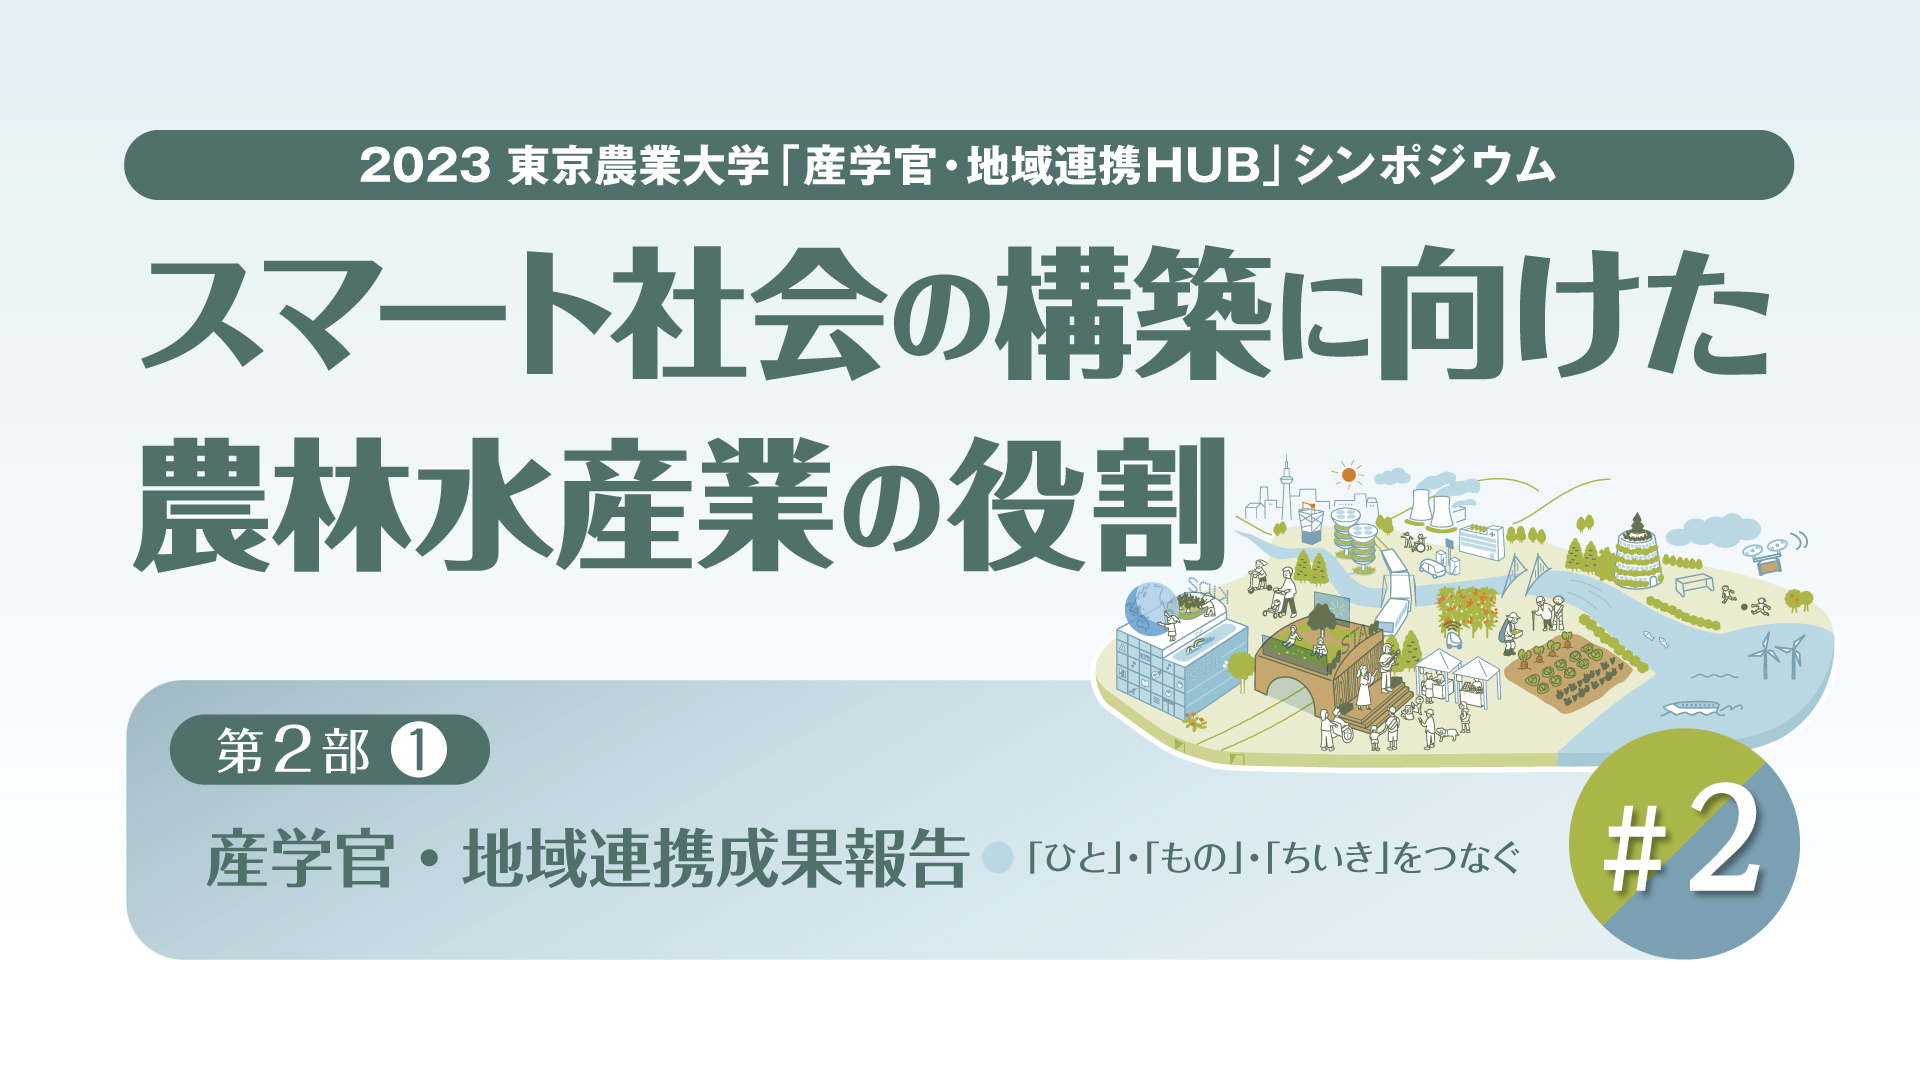 【#2 東京農業大学「産学官・地域連携HUB」シンポジウム / 2023年度 第2回】「スマート社会の構築に向けた農林水産業の役割」【第2部 / 産学官・地域連携成果報告】